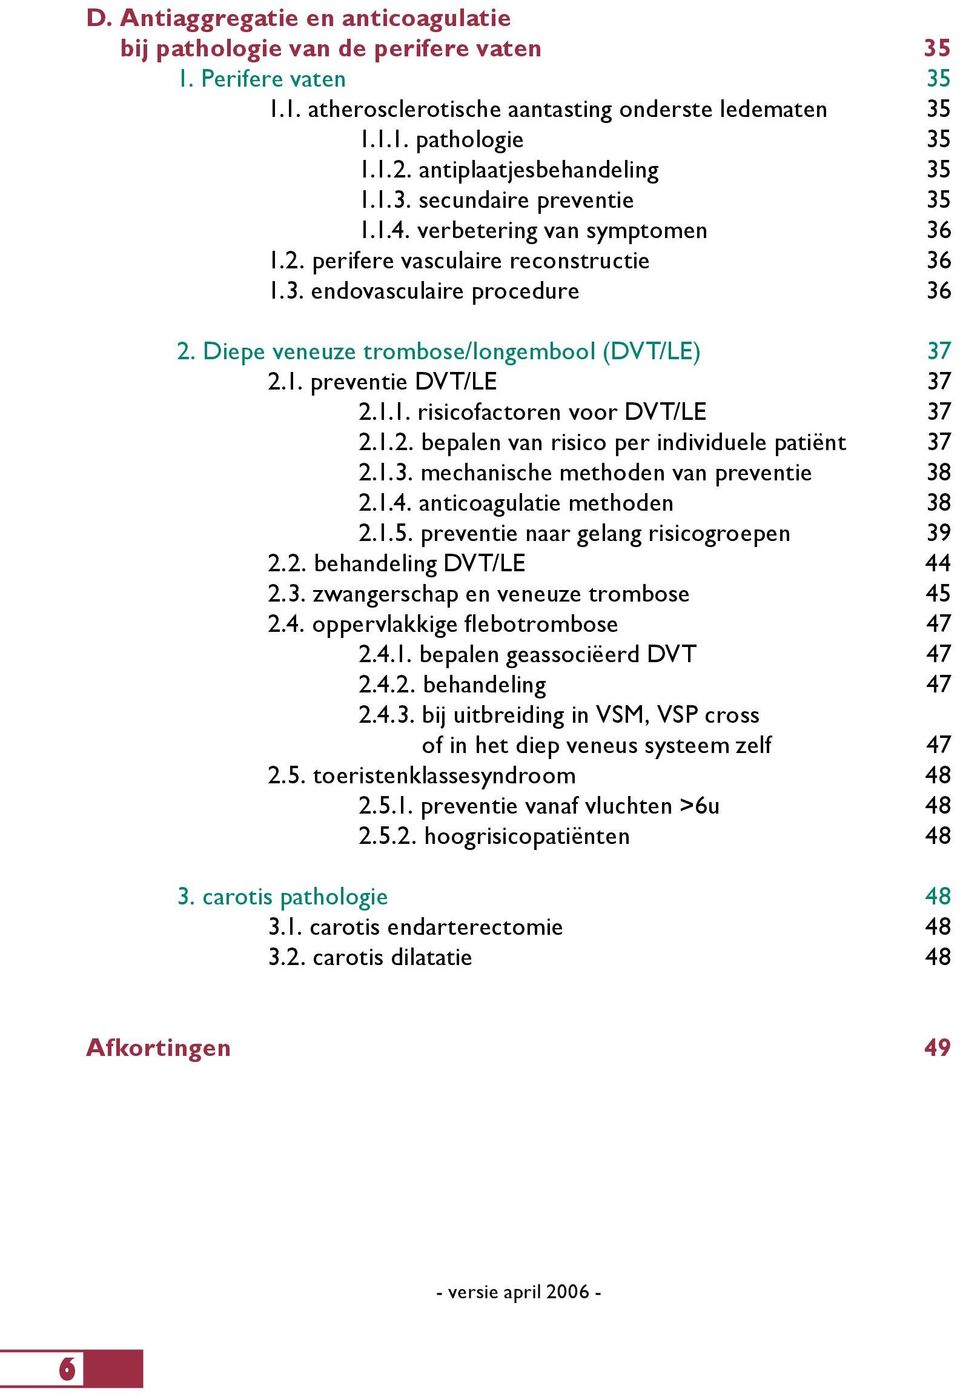 Diepe veneuze trombose/longembool (DVT/LE) 37 2.1. preventie DVT/LE 37 2.1.1. risicofactoren voor DVT/LE 37 2.1.2. bepalen van risico per individuele patiënt 37 2.1.3. mechanische methoden van preventie 38 2.